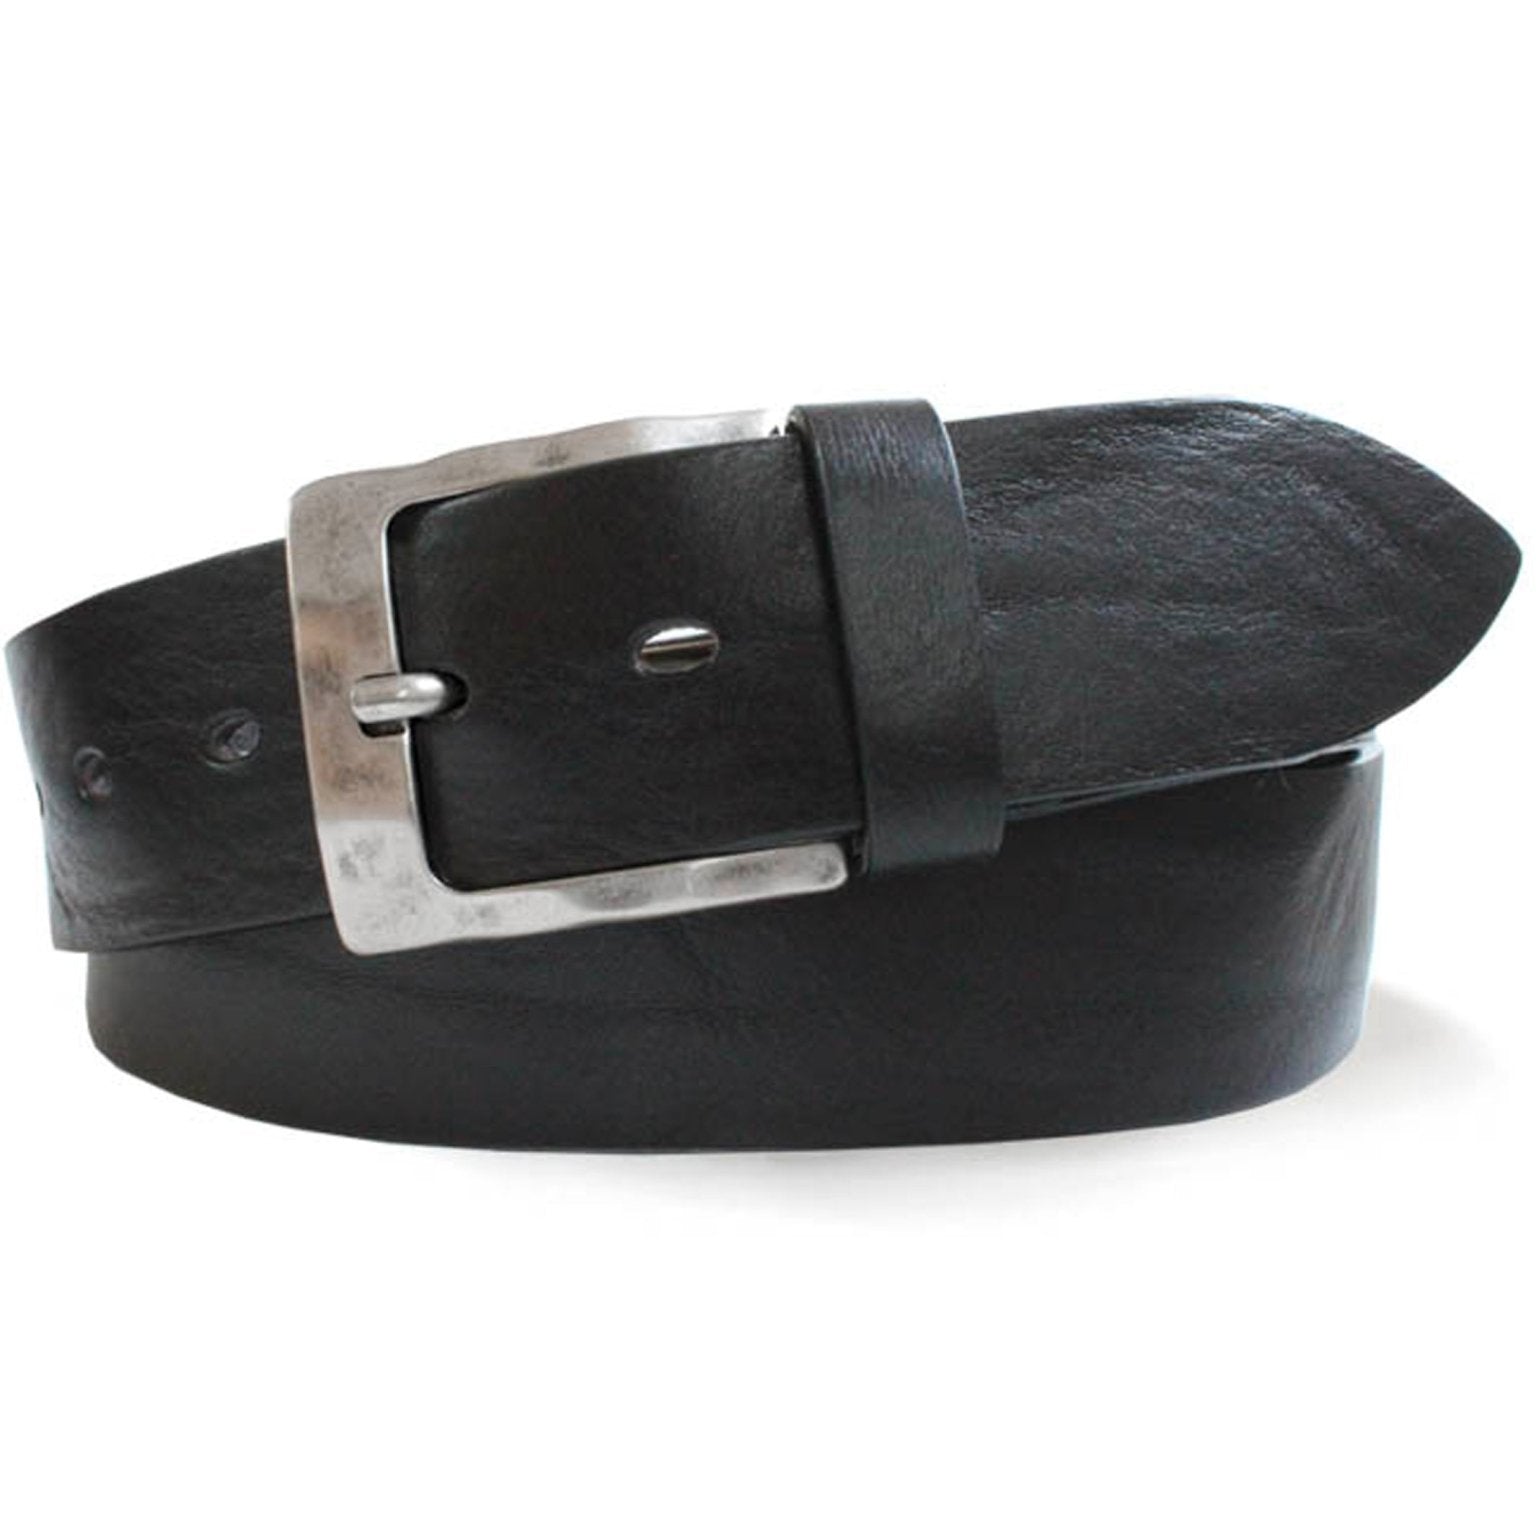 4elementsclothingRobert CharlesRobert Charles Belts - 6307 Burnished Mens Leather Belt - 40mm leather width - Made in ItalyBelts6307/BLACK/S